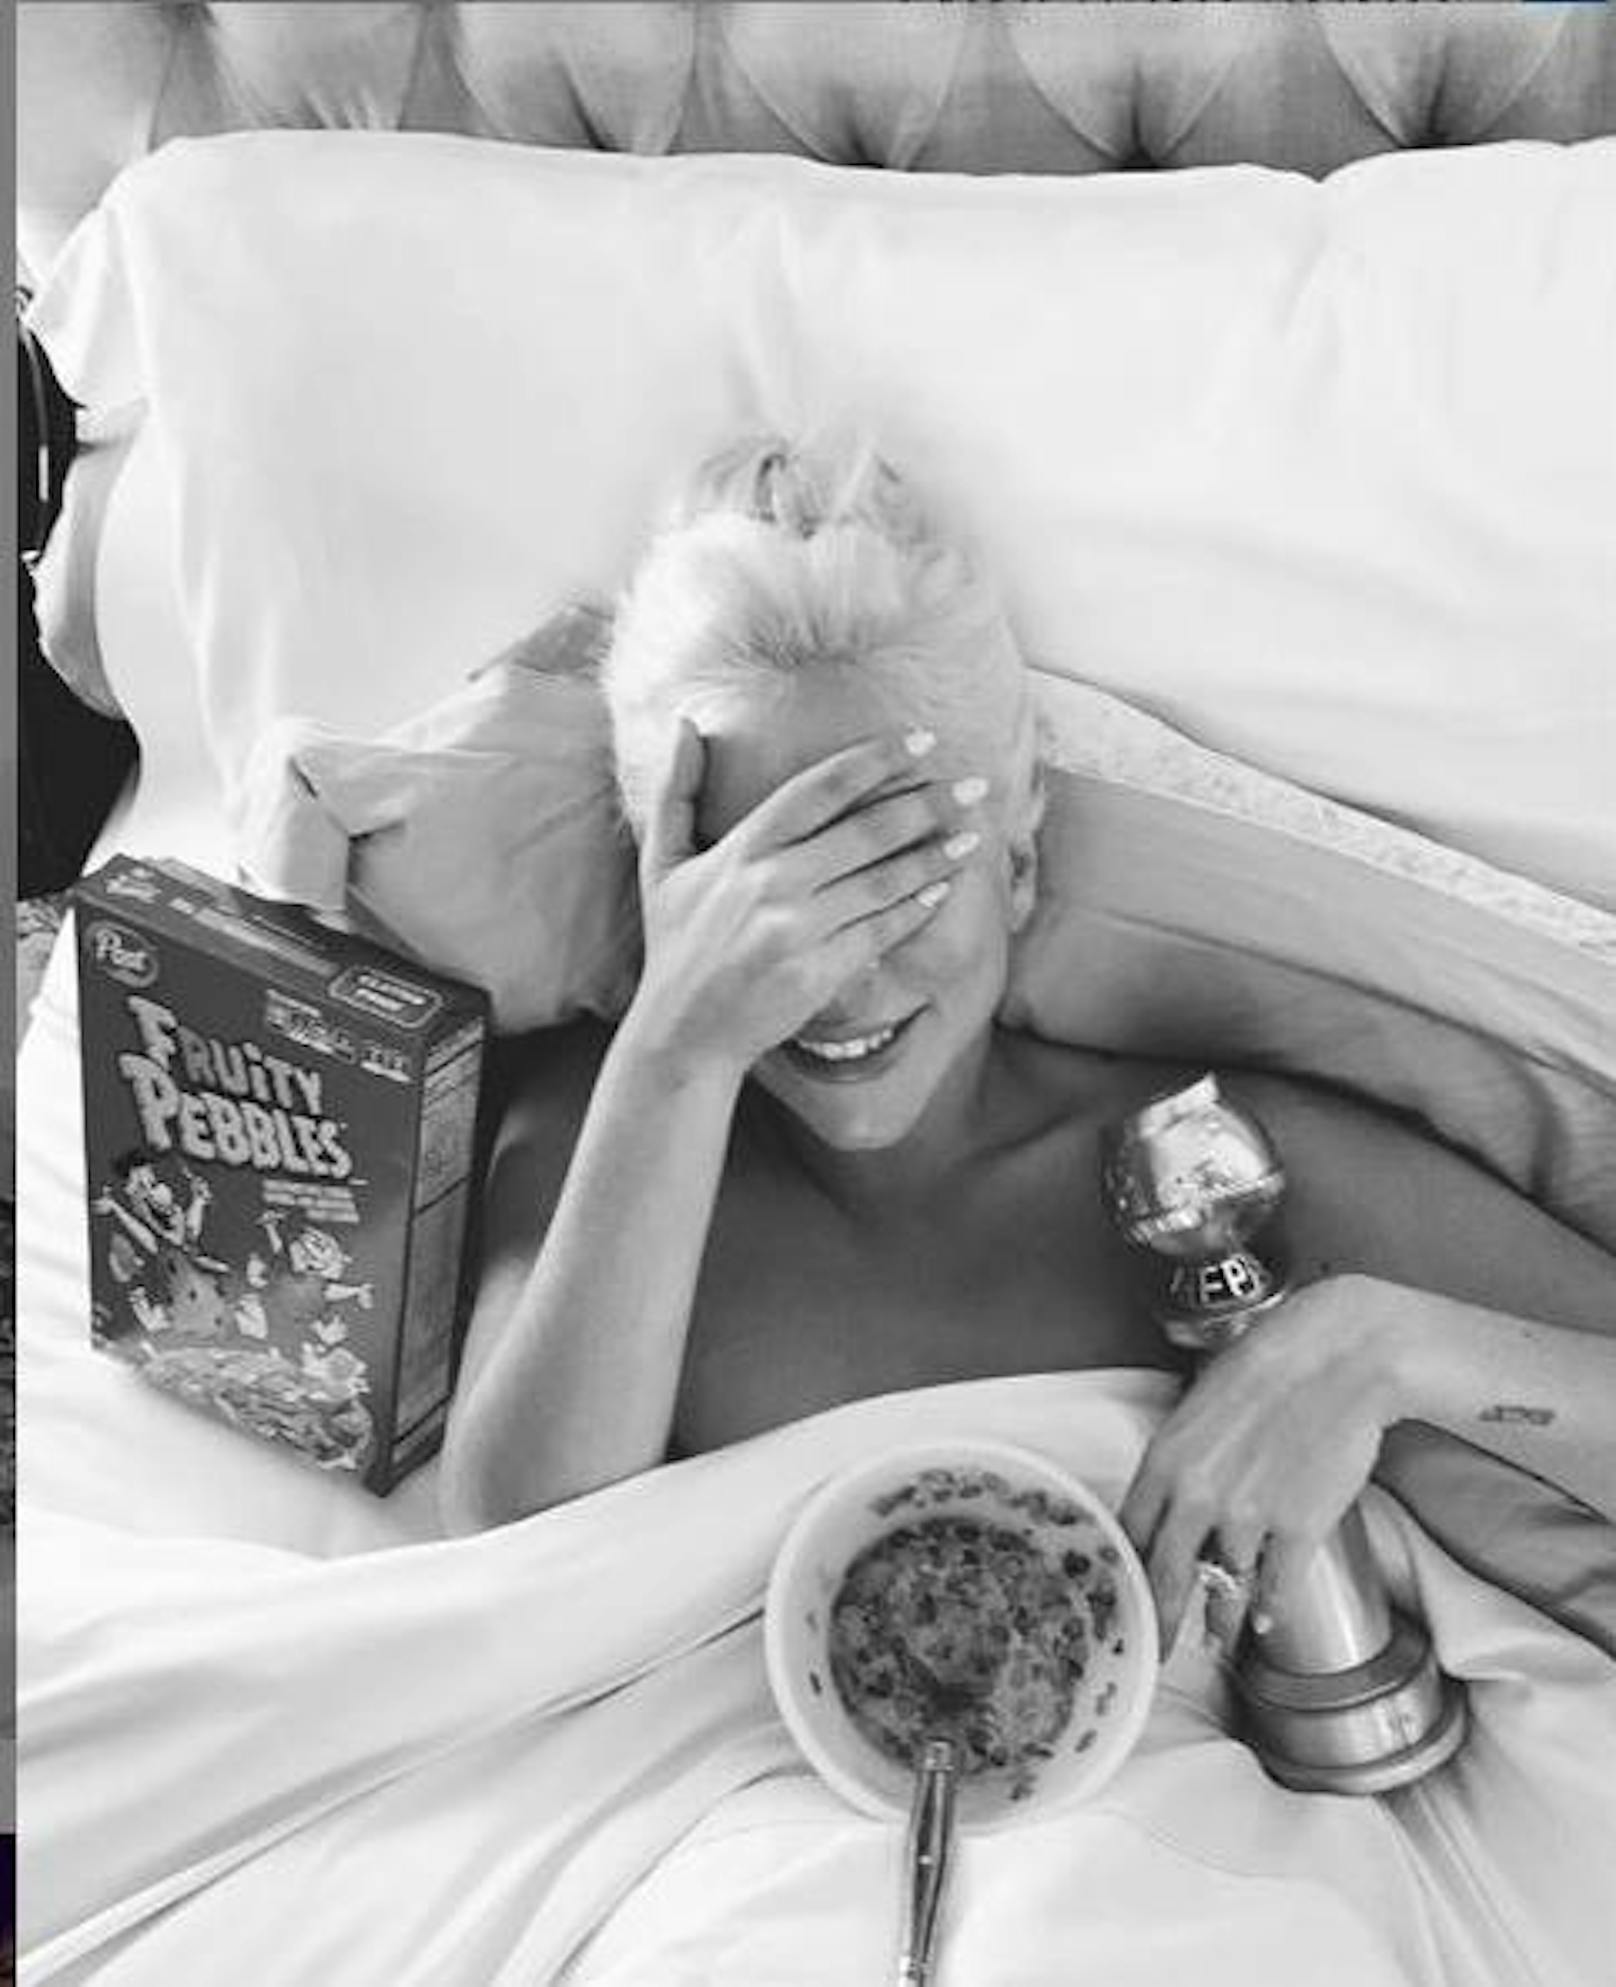 07.01.2019: Frühstück für Champions. Lady Gaga feiert ihren Golden Globe standesgemäß mit einer Schüssel Fruity Pebbles im Bett.